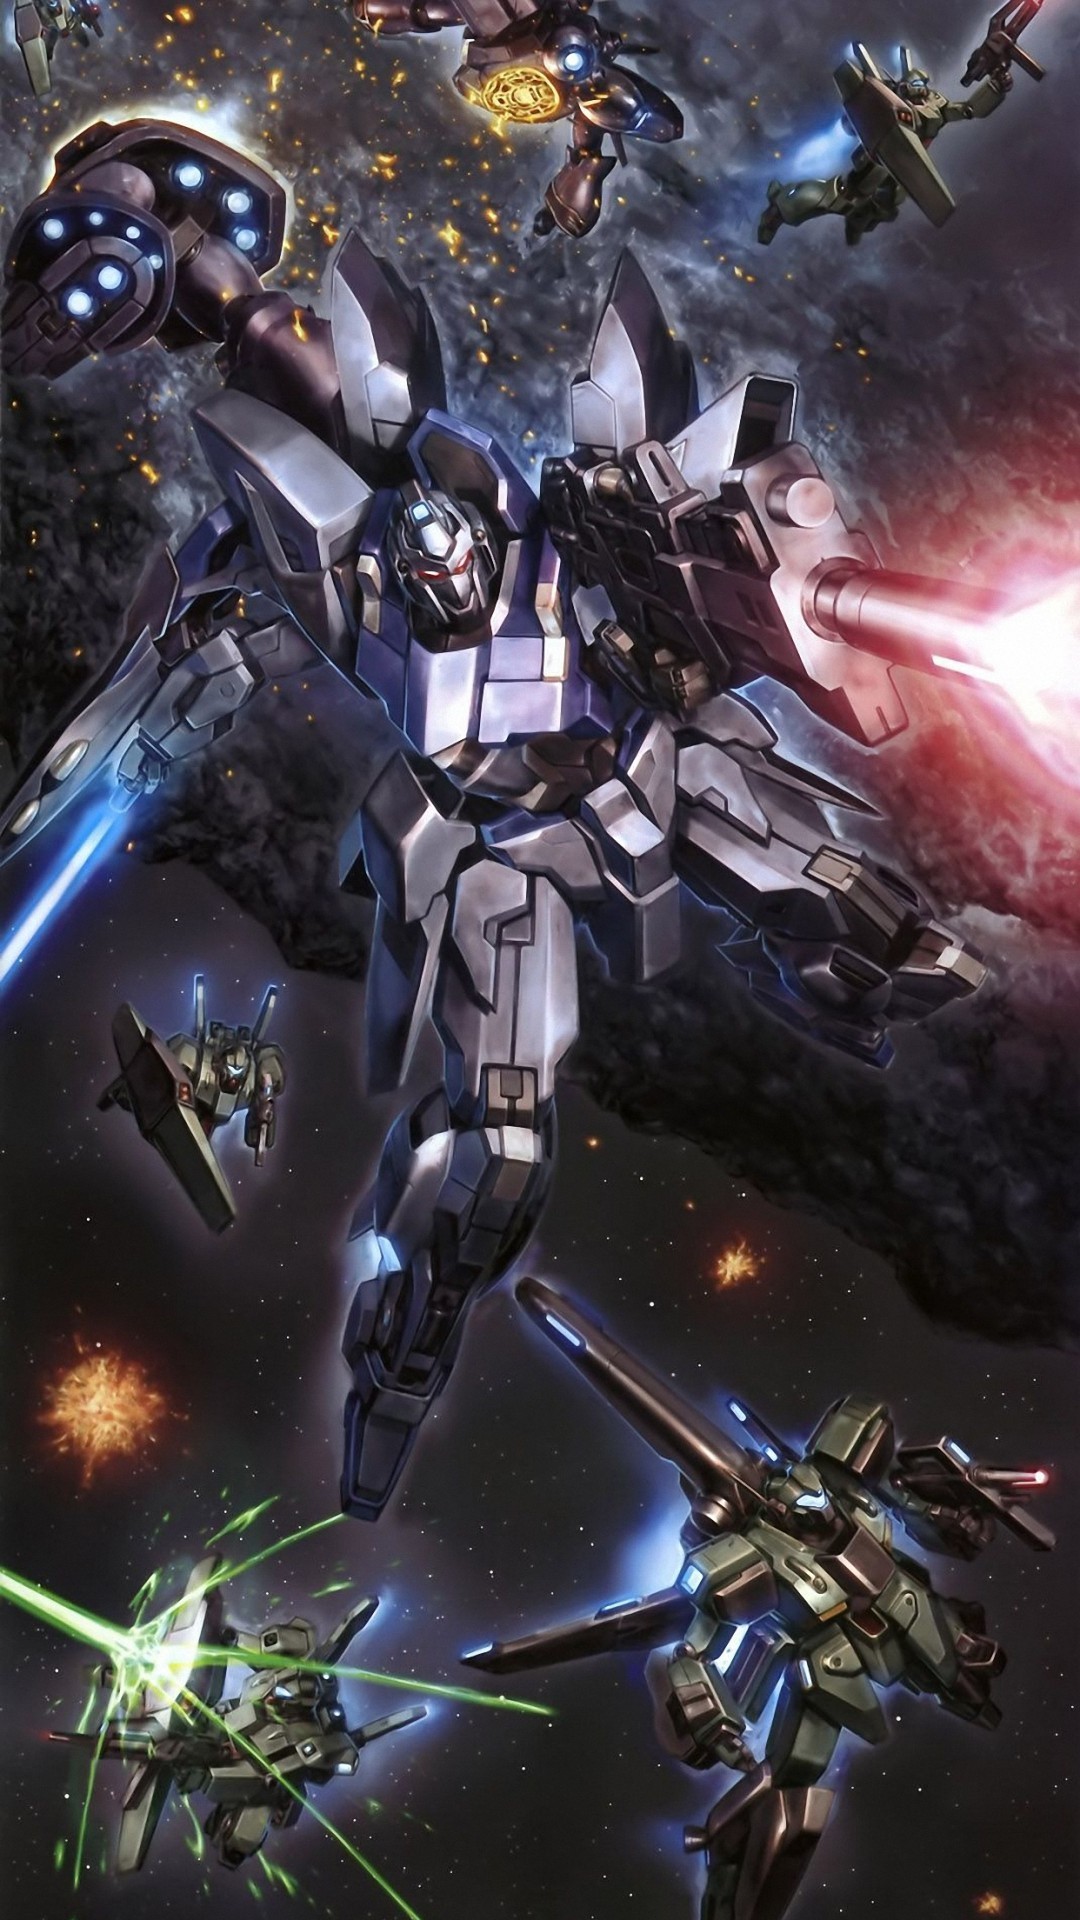 1080x1920 1920x1080 Musou Cutscene Comparisons: Zeta Gundam, Part 1